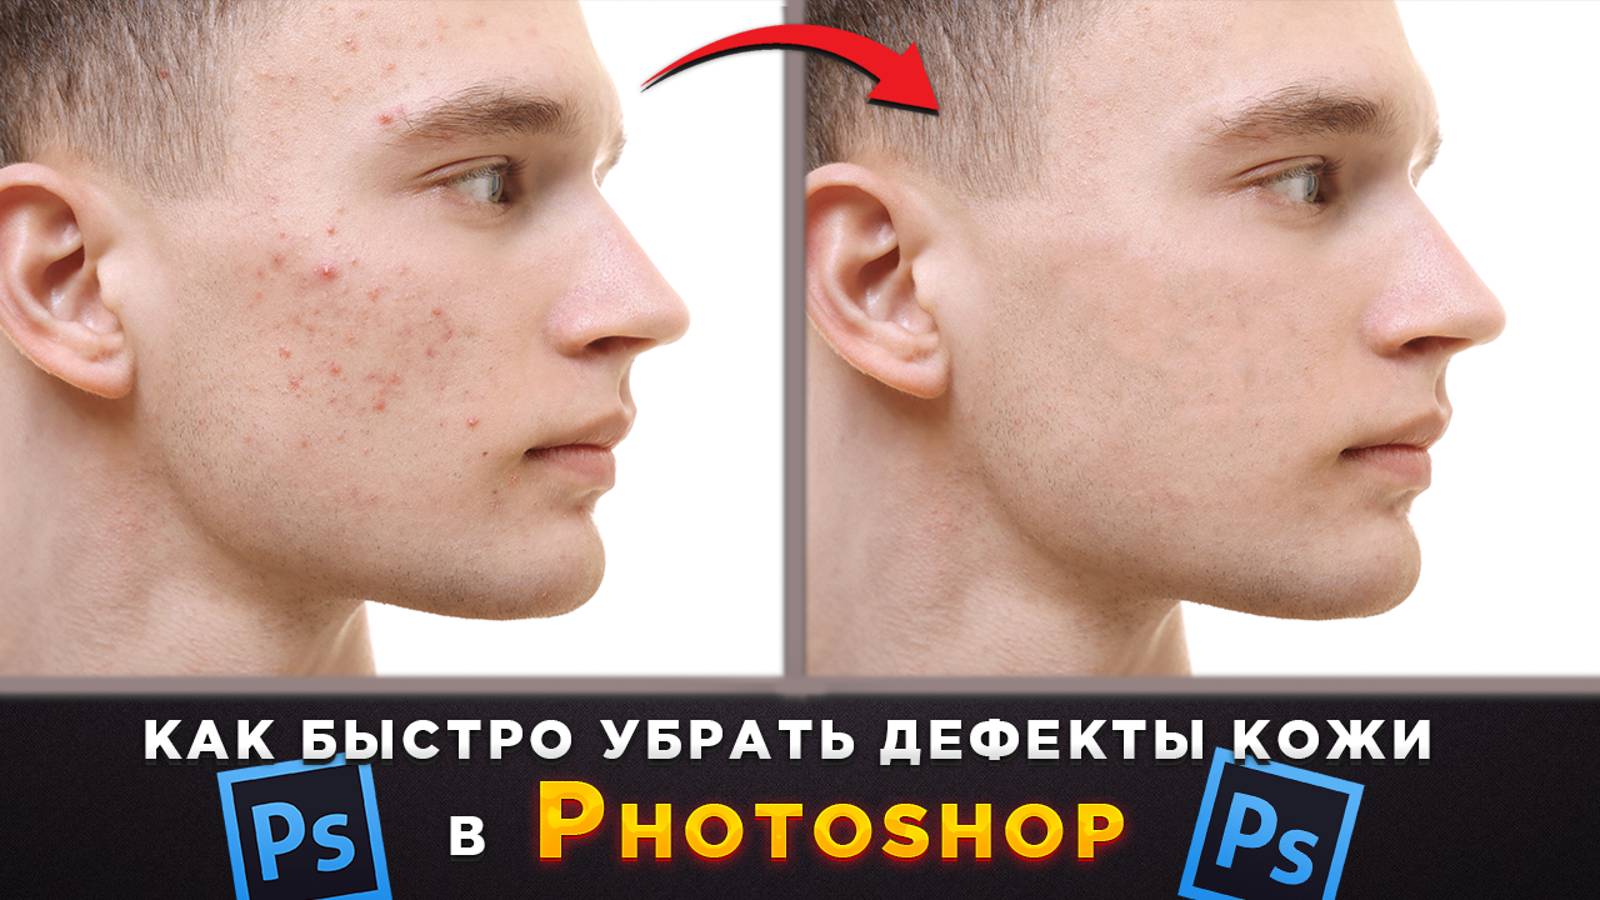 Как убрать прыщики, ретушь лица в Фотошопе Photoshop